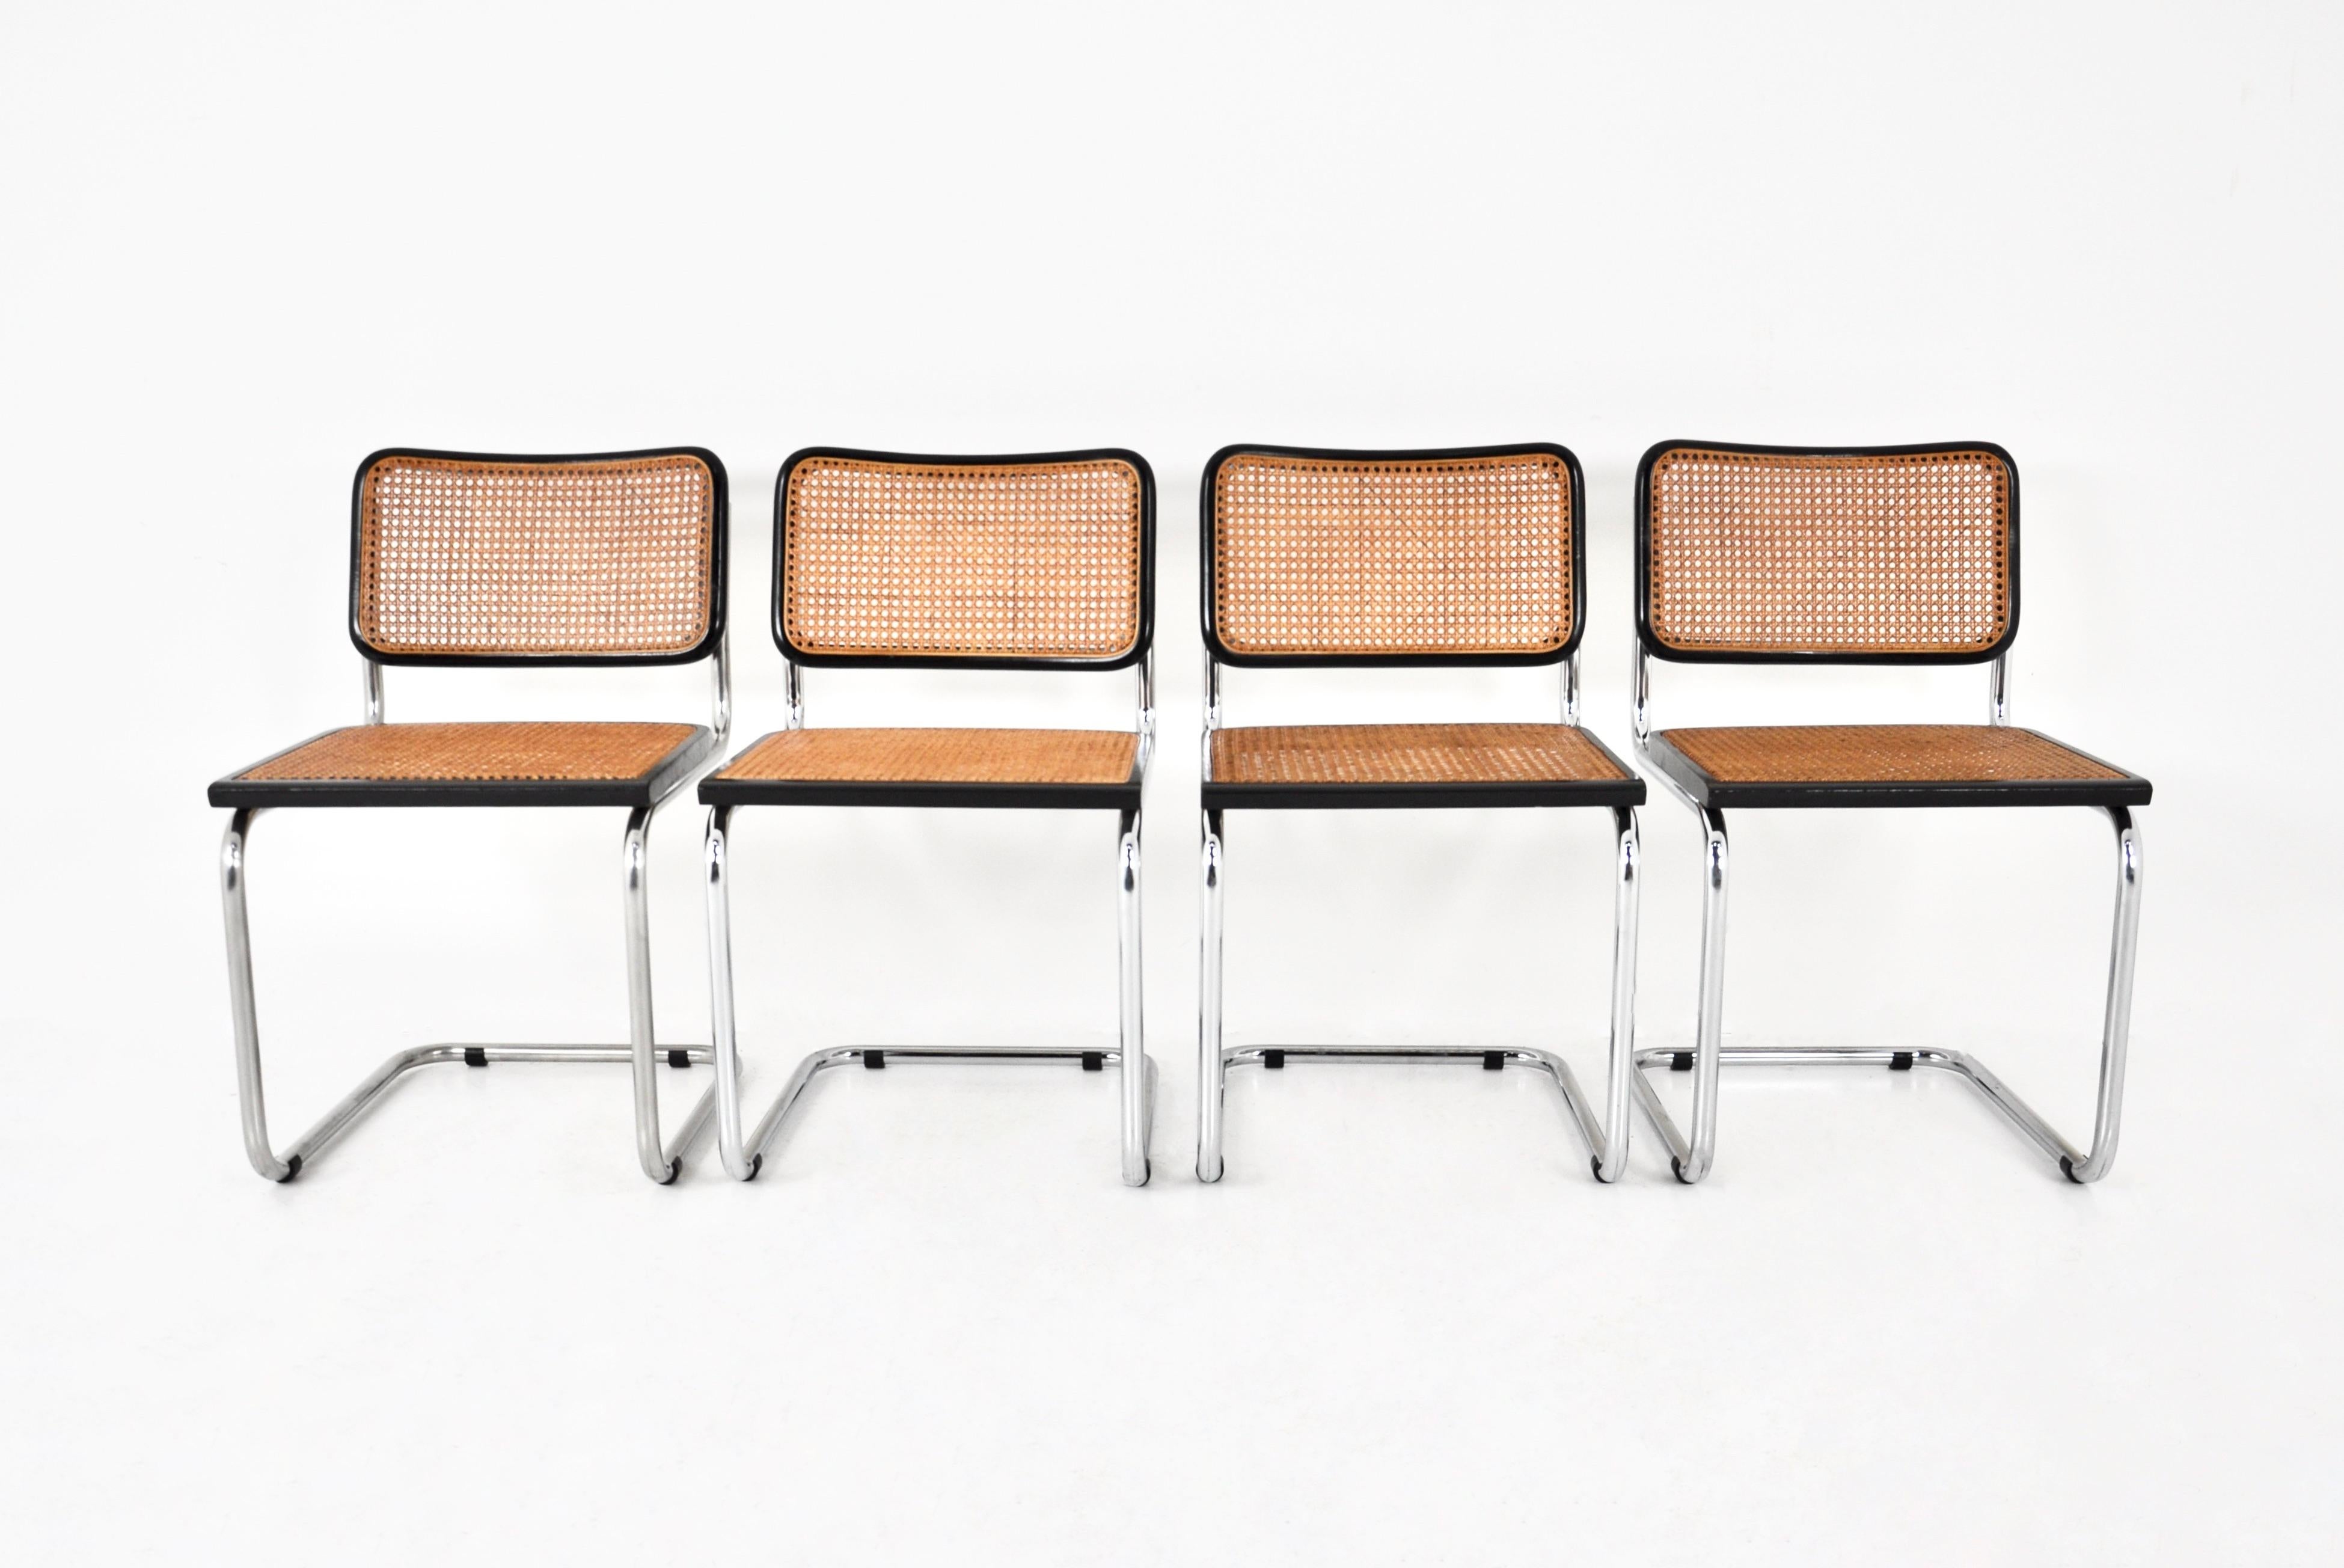 Ensemble de 4 chaises en bois, rotin et métal. Dimensions : hauteur du siège : 46 cm. Usure due au temps et à l'âge des chaises.